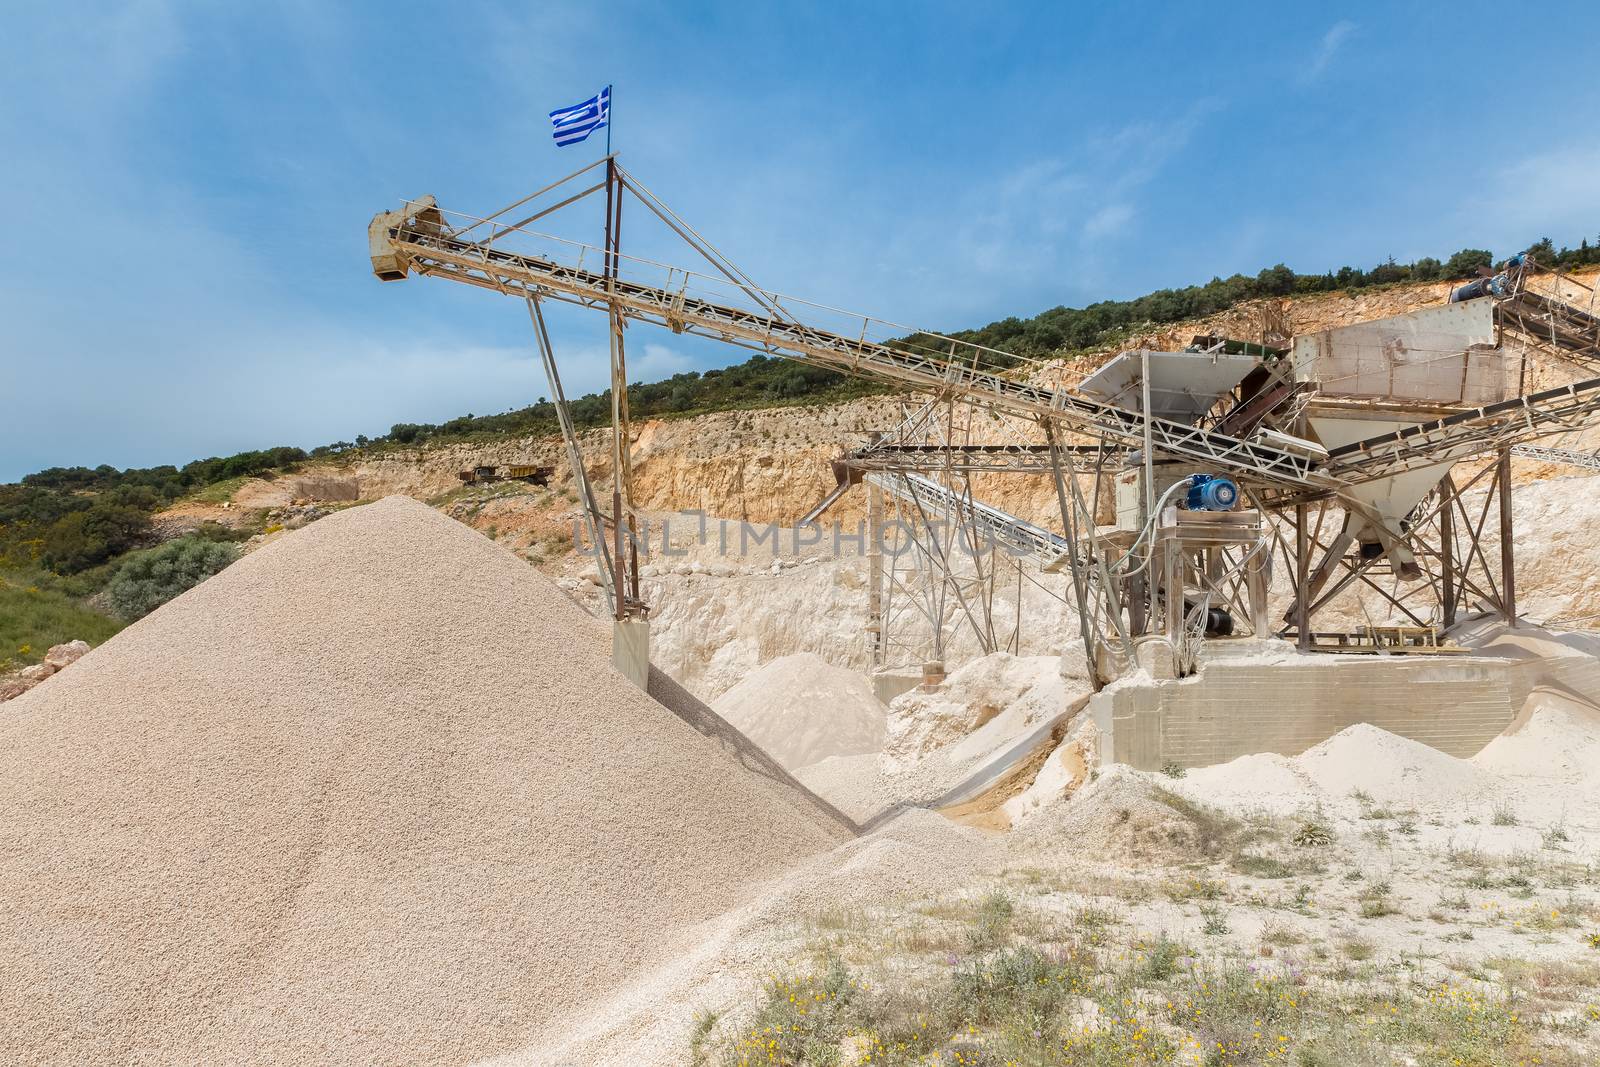 Machine in Greece mining gravel by BenSchonewille